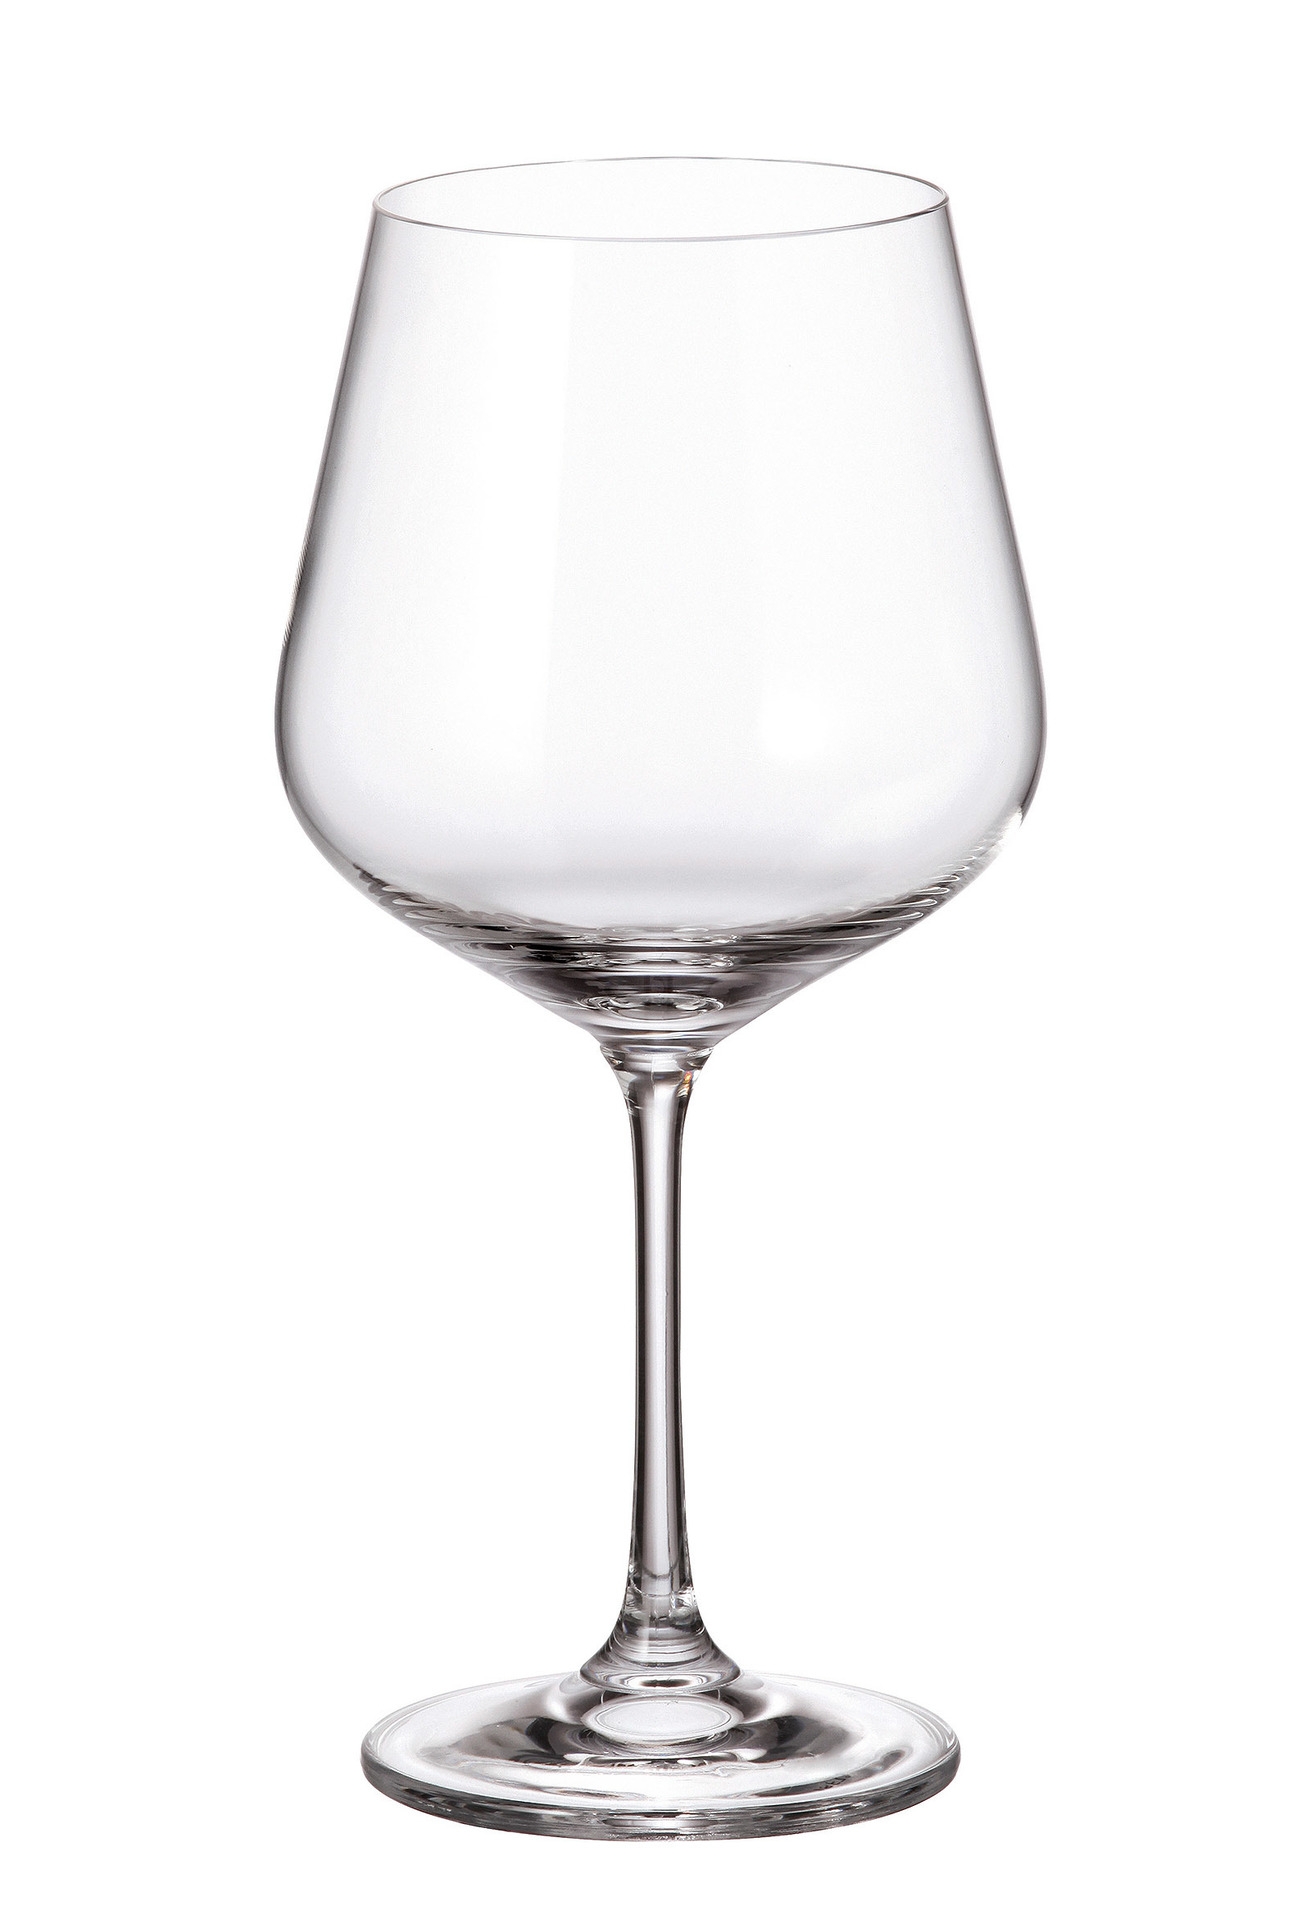 Ποτήρι Κρασιού Κρυστάλλινο Bohemia Strx 600ml CTB06902060 (Σετ 6 Τεμάχια) (Υλικό: Κρύσταλλο, Χρώμα: Διάφανο , Μέγεθος: Κολωνάτο) – Κρύσταλλα Βοημίας – CTB06902060